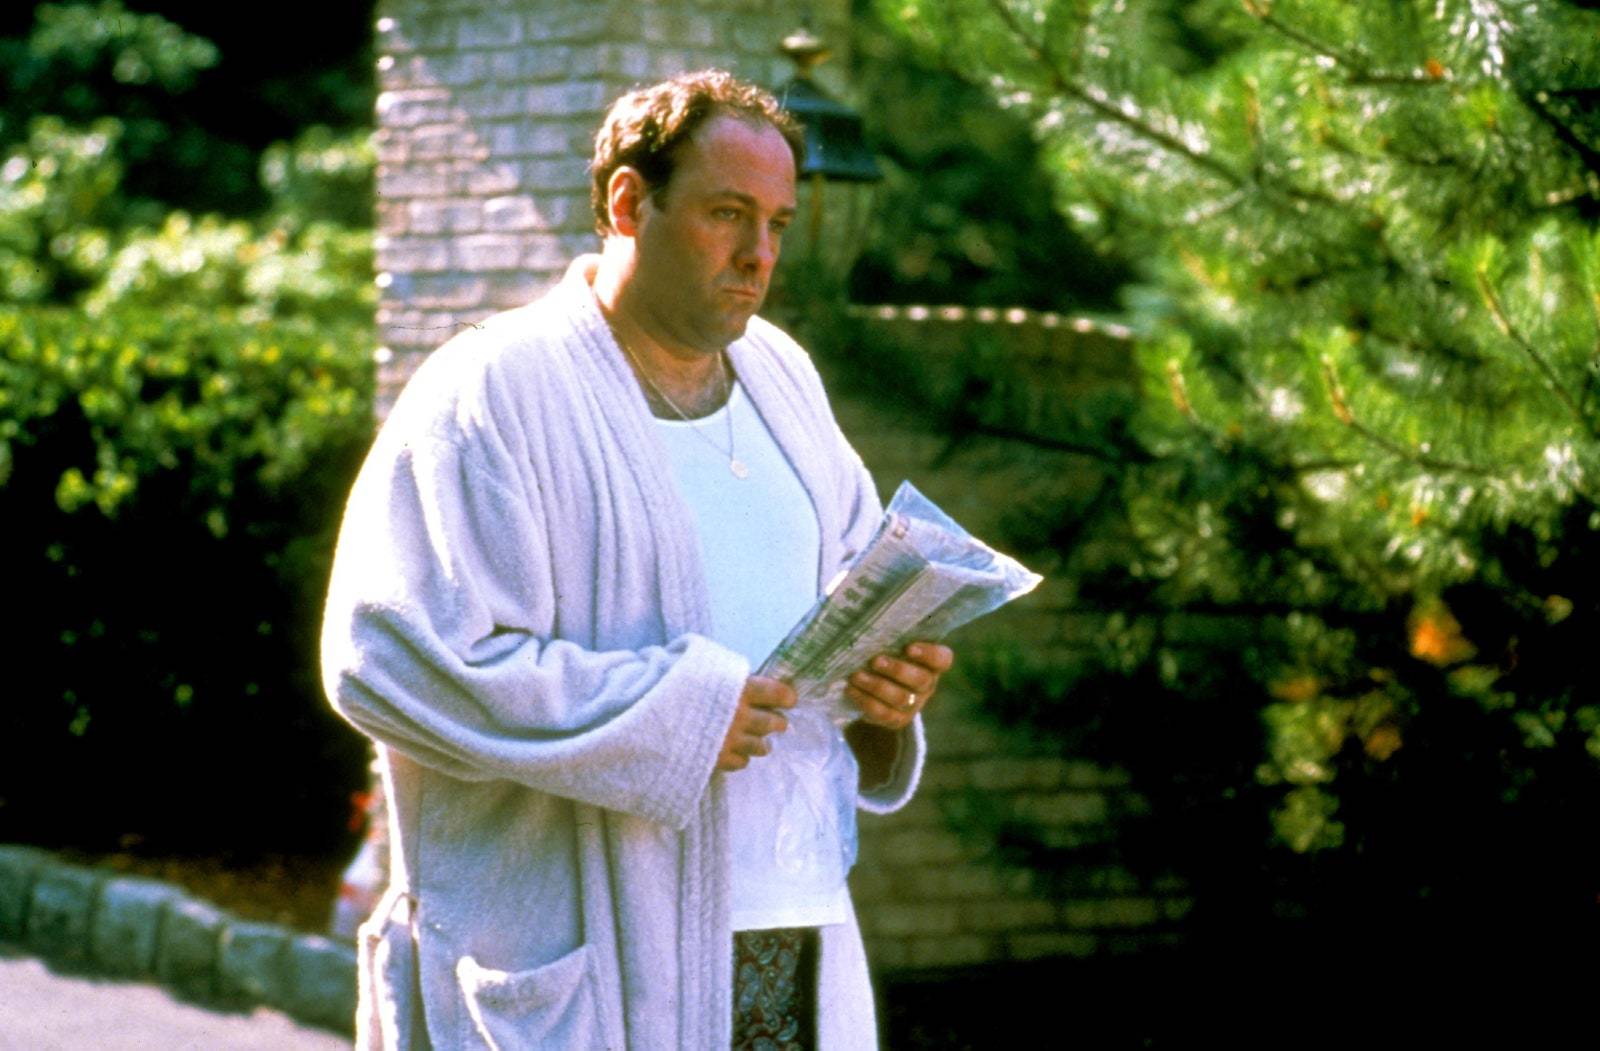 Tony Sorpano, interpretado por el actor James Gandolfini, vestido con albornoz y ropa interior, durante un capítulo de Los Soprano.